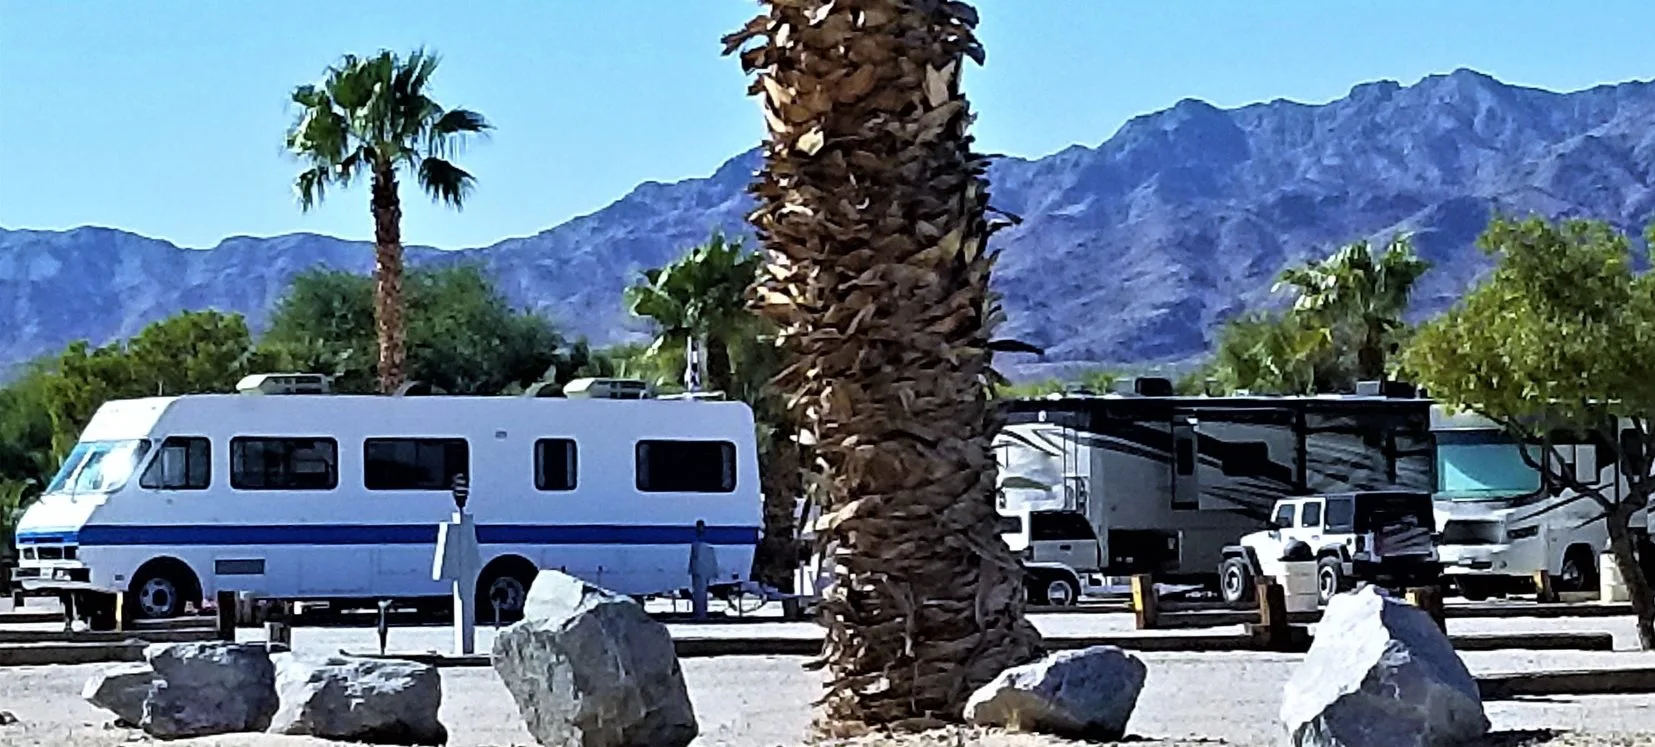 Multiple RVs park in campsite.